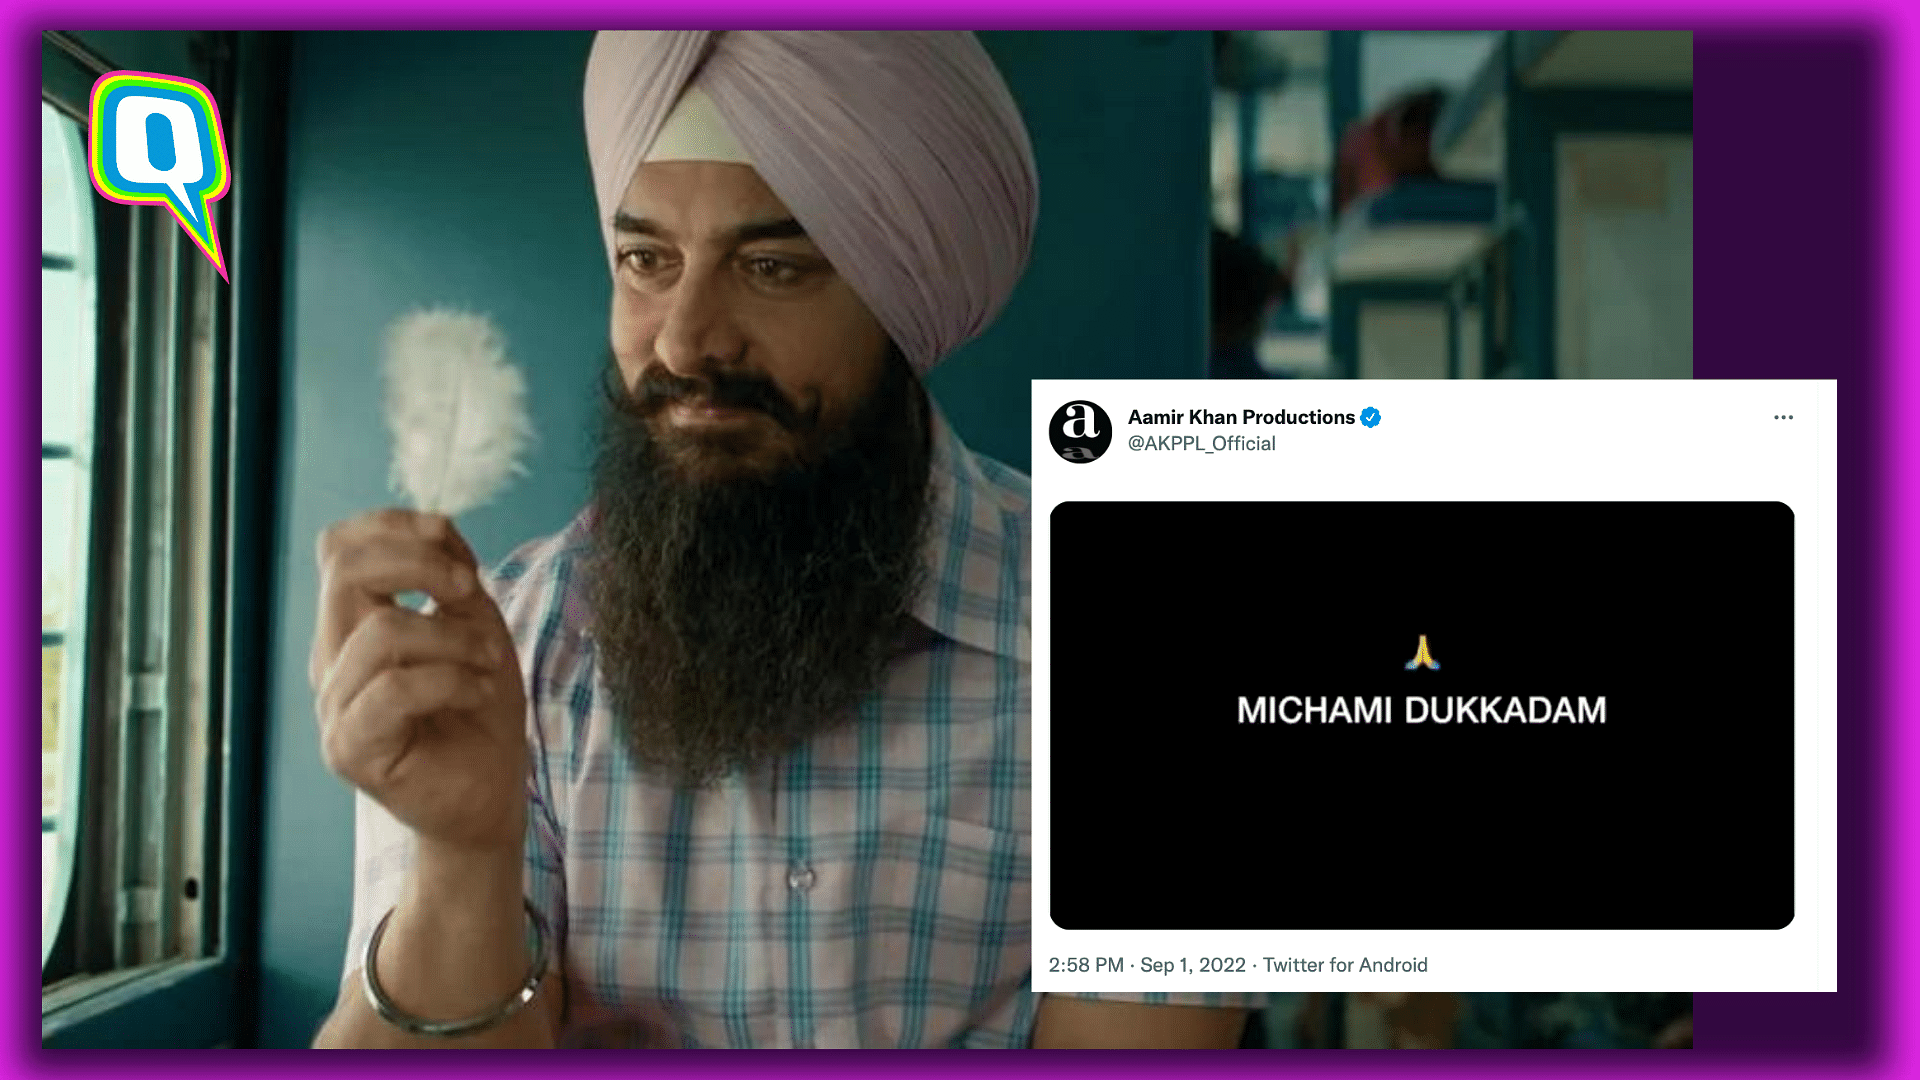 Michhami Dukkadam Apology on Aamir Khans Socials Raises Questions Online